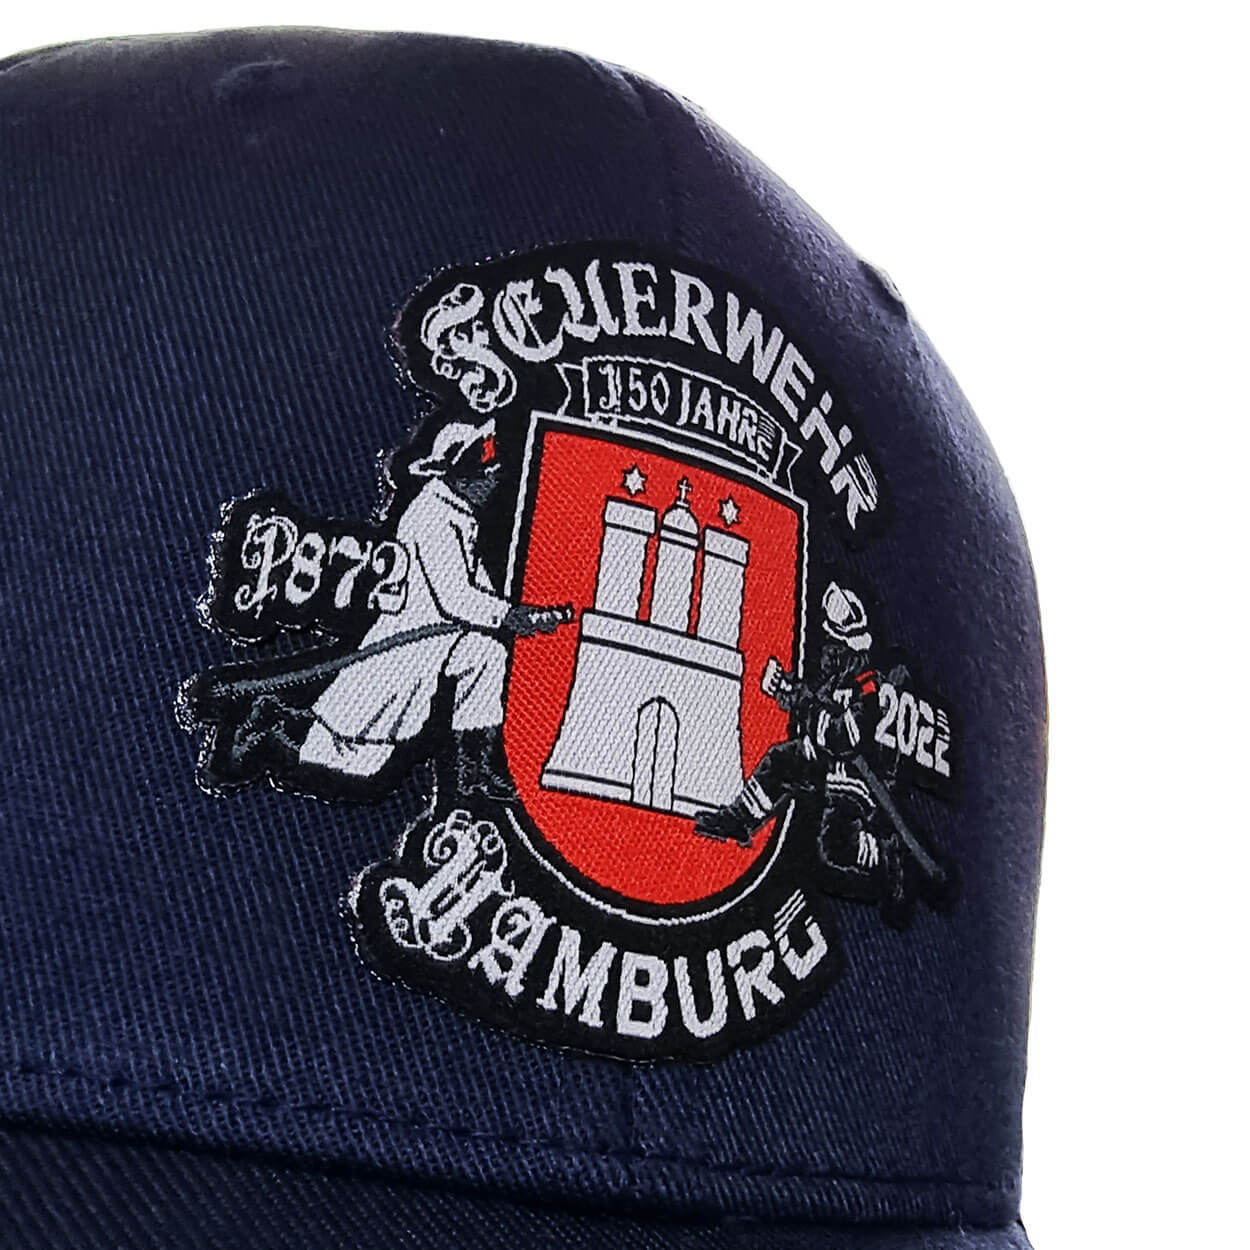 Feuerwehr Hamburg 150 Jahre Basecap